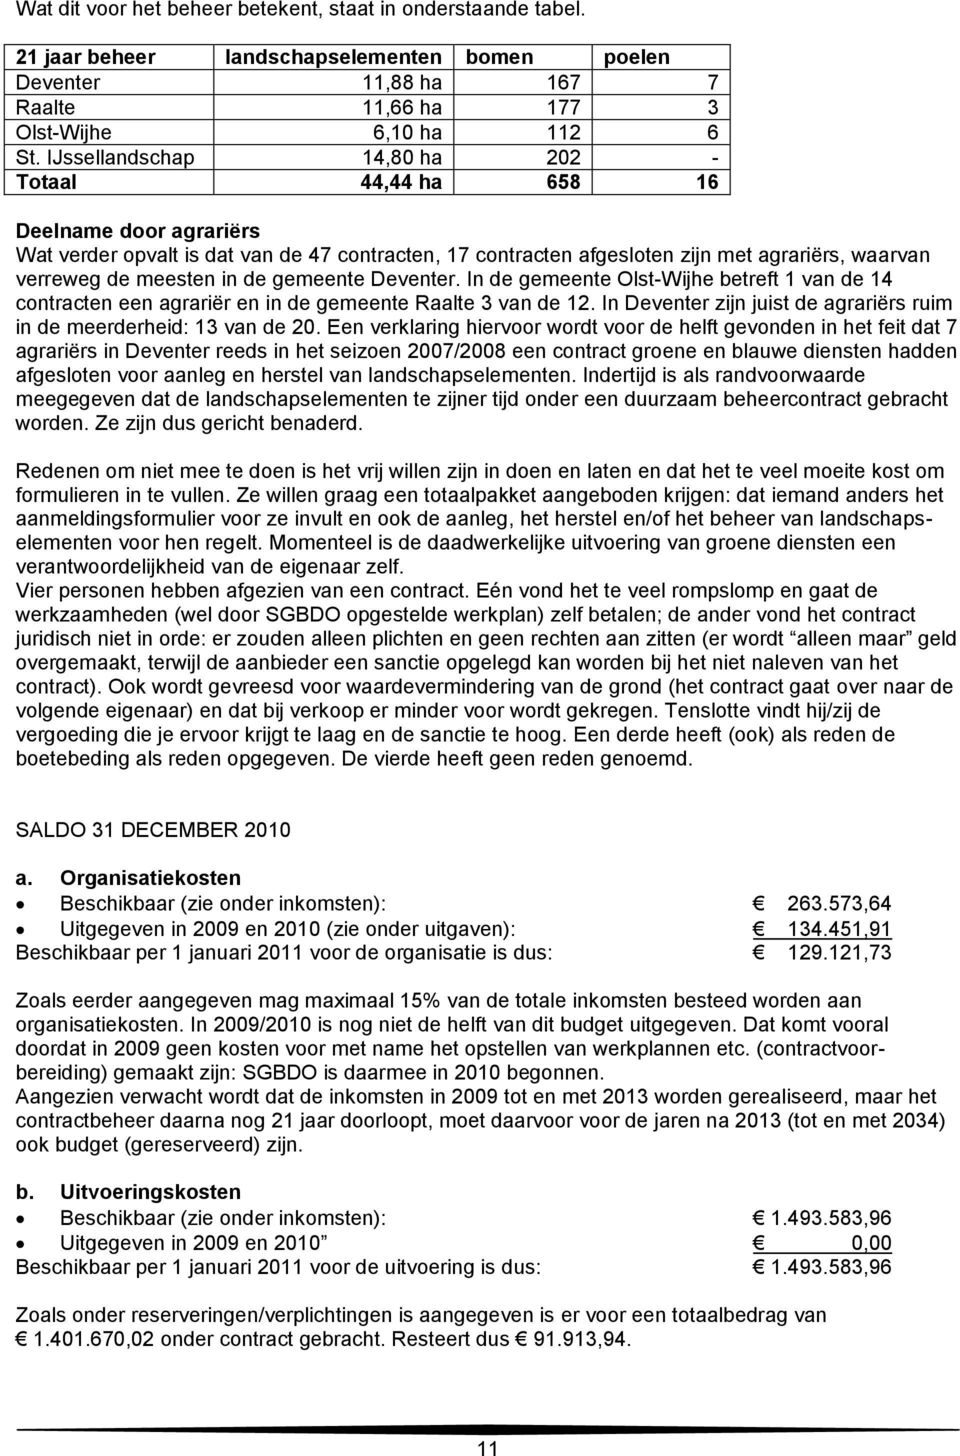 in de gemeente Deventer. In de gemeente Olst-Wijhe betreft 1 van de 14 contracten een agrariër en in de gemeente Raalte 3 van de 12.